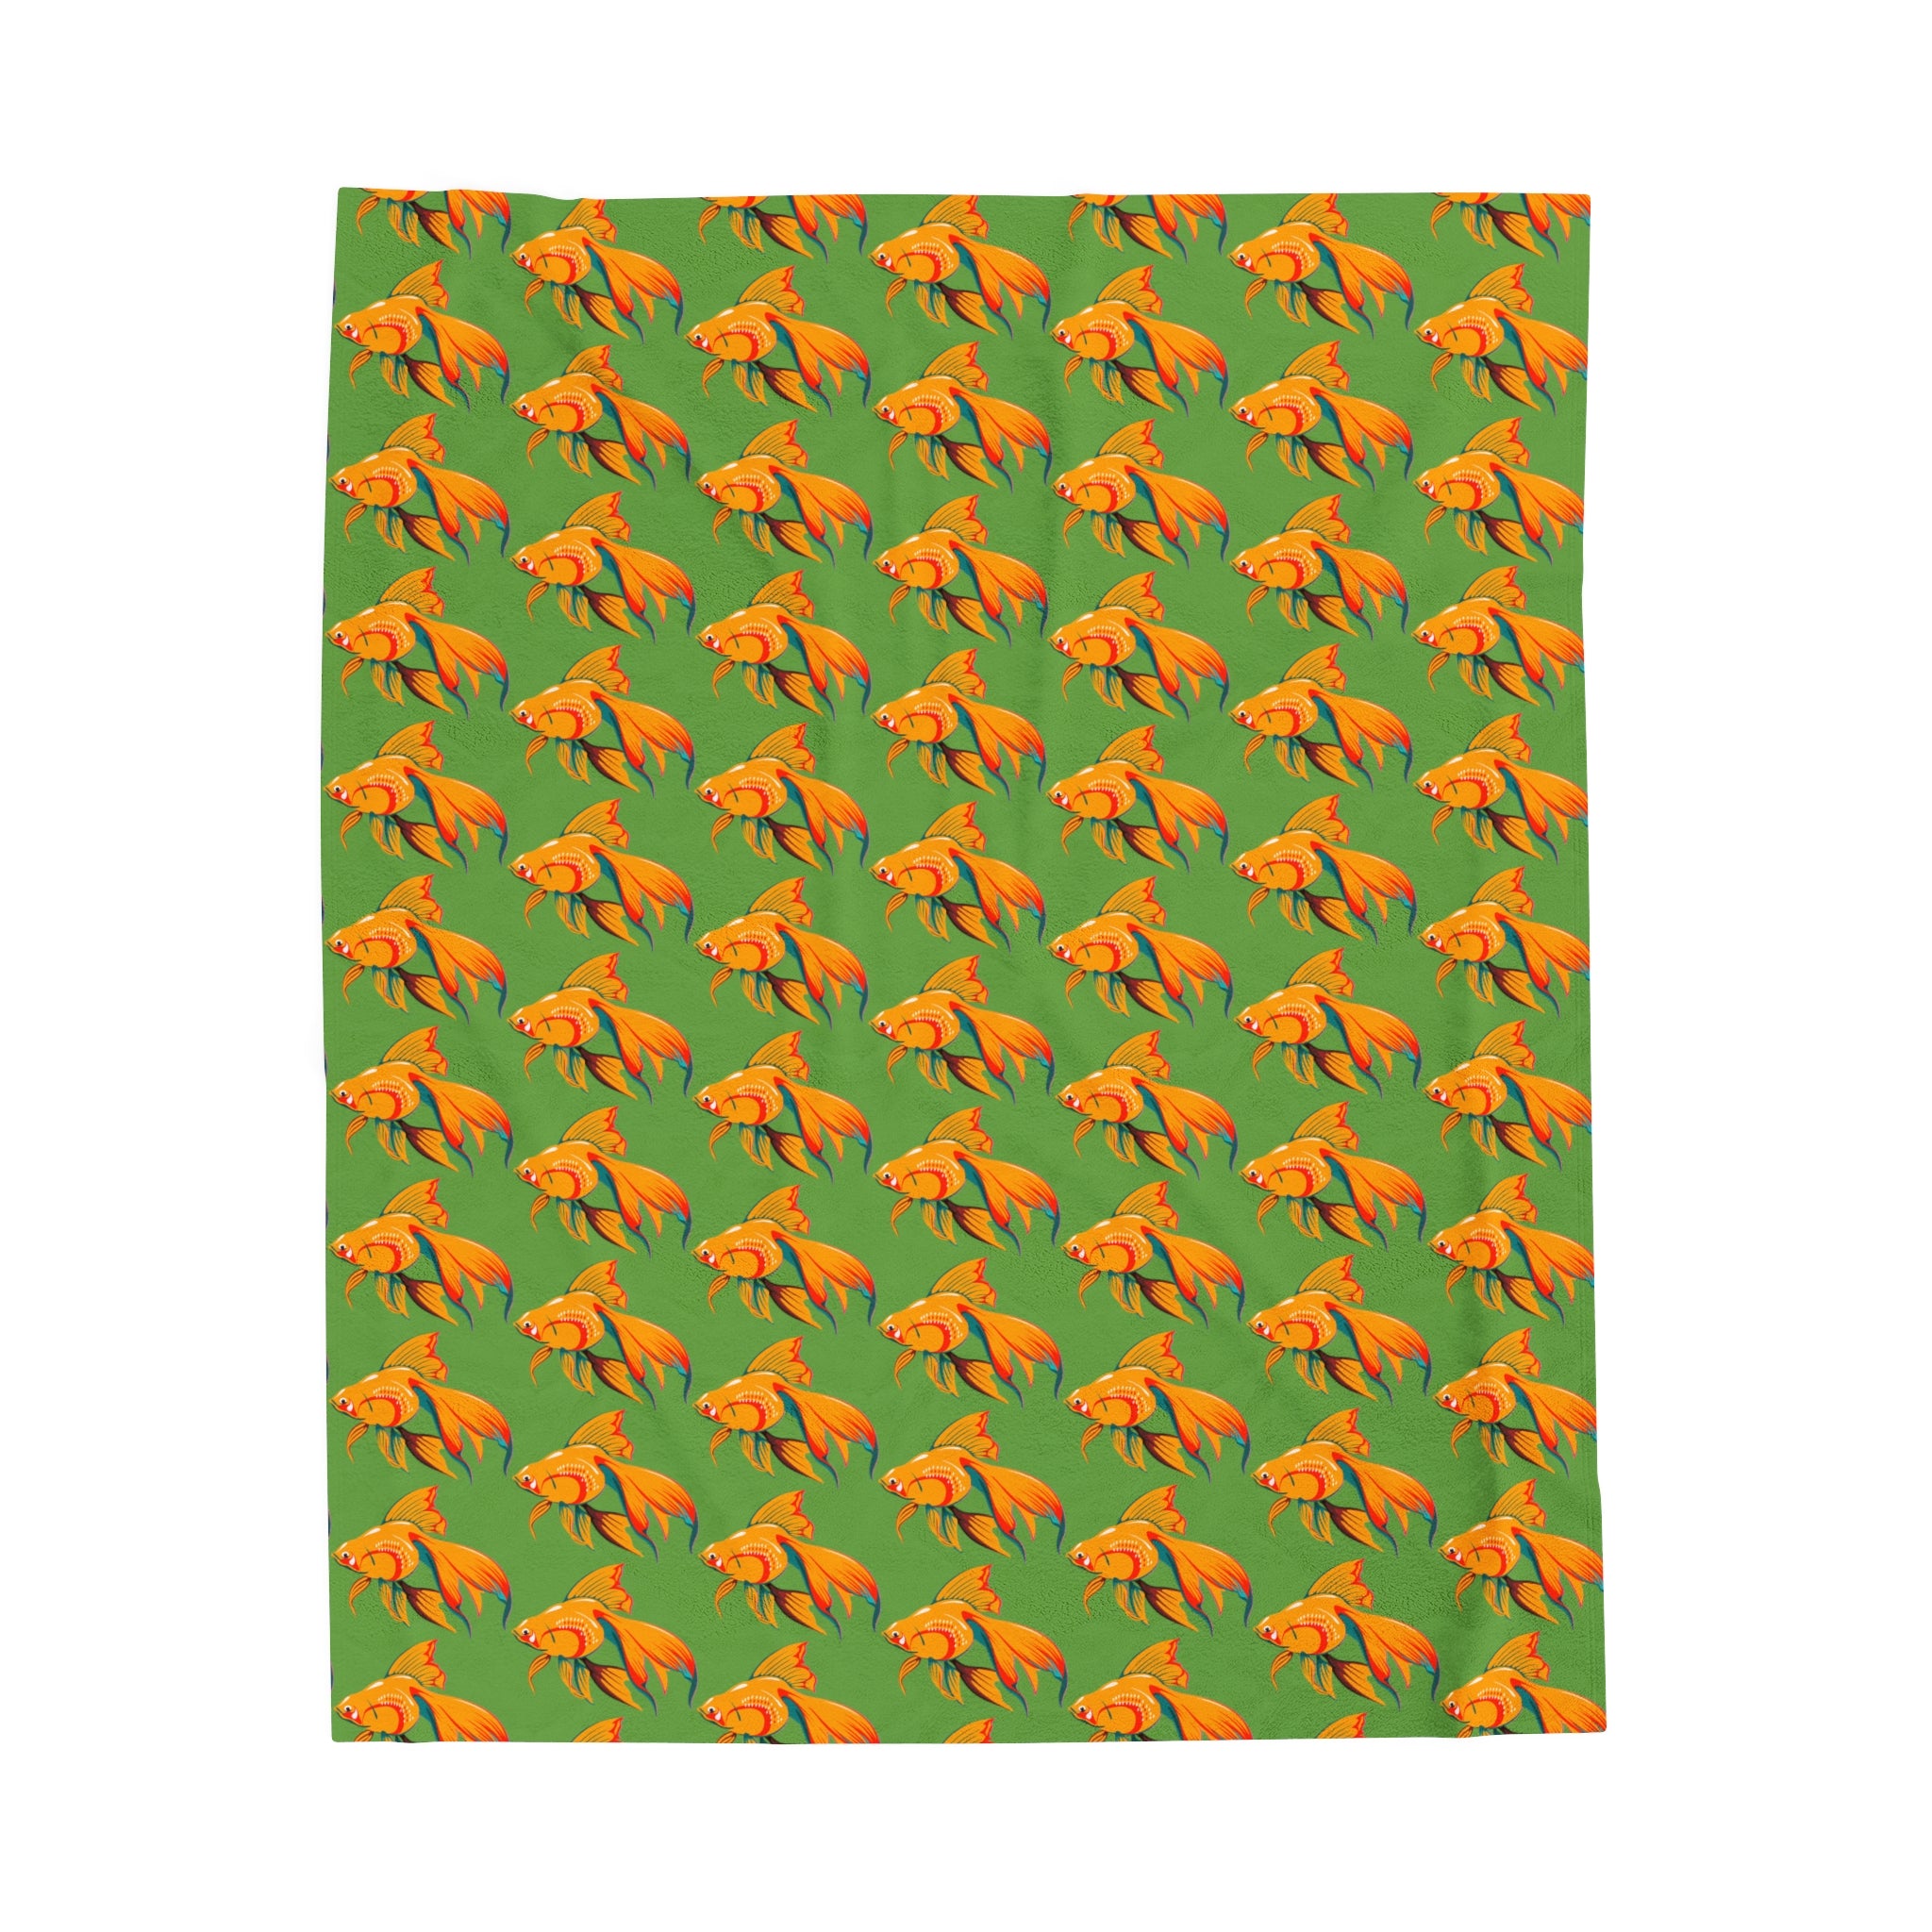 green velveteen plush blanket with a goldfish design